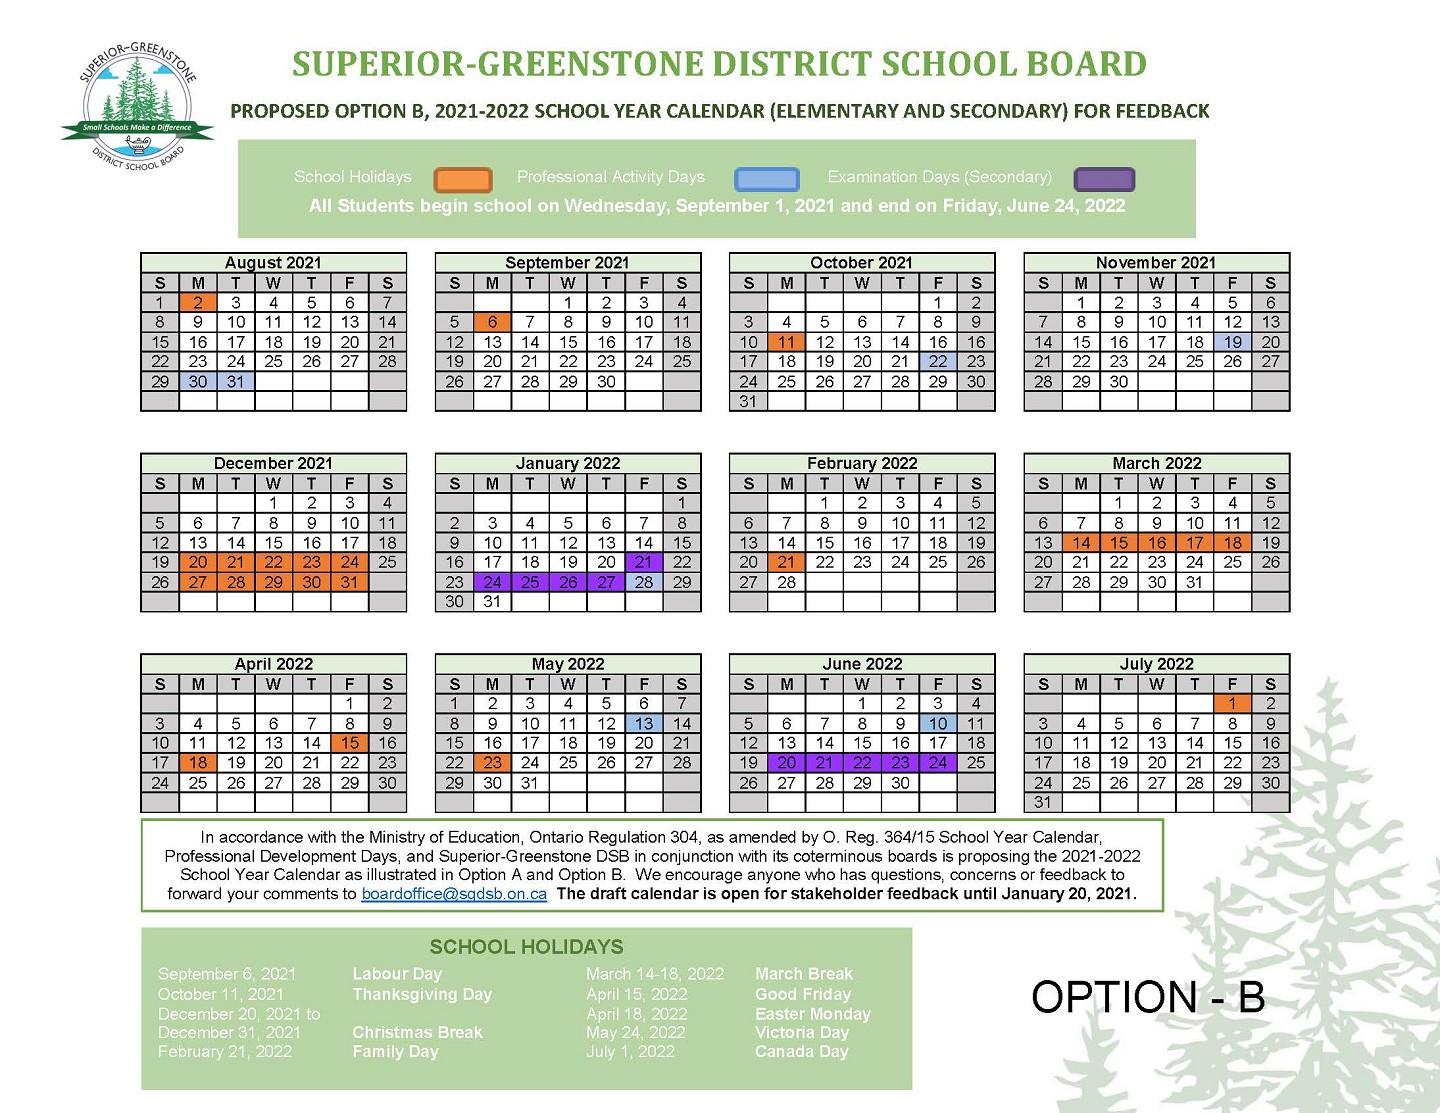 sgdsb-proposed-school-year-calendar-2021